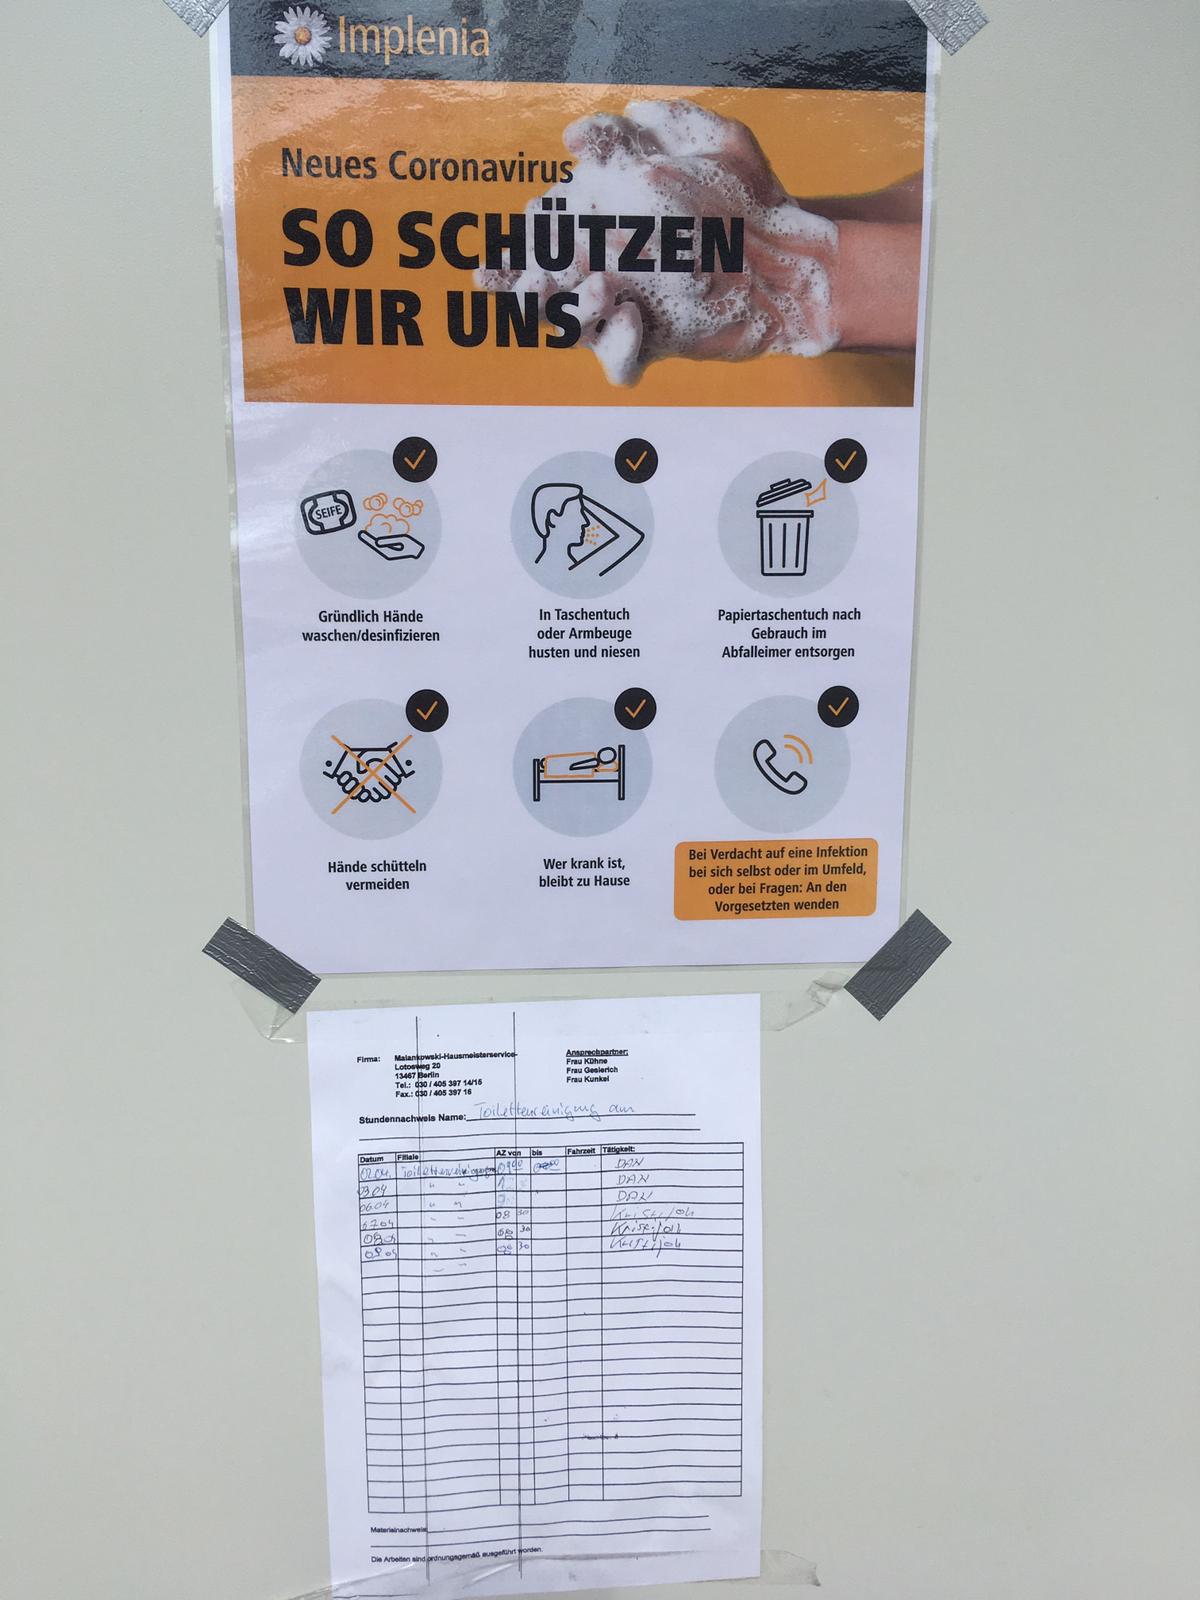 Information et hygiène : en plus des affiches d'information qui ont été accrochées partout, nous avons également augmenté les intervalles de nettoyage des installations sanitaires.